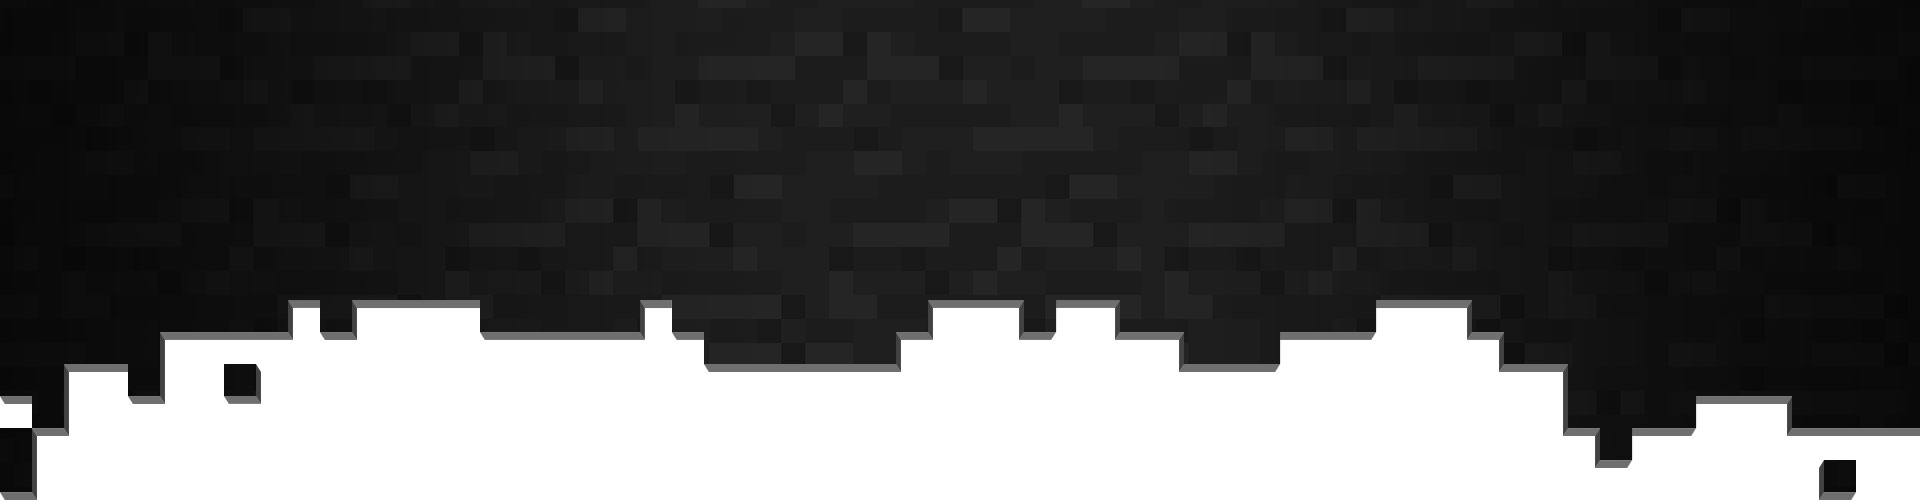 Black and grey pixels